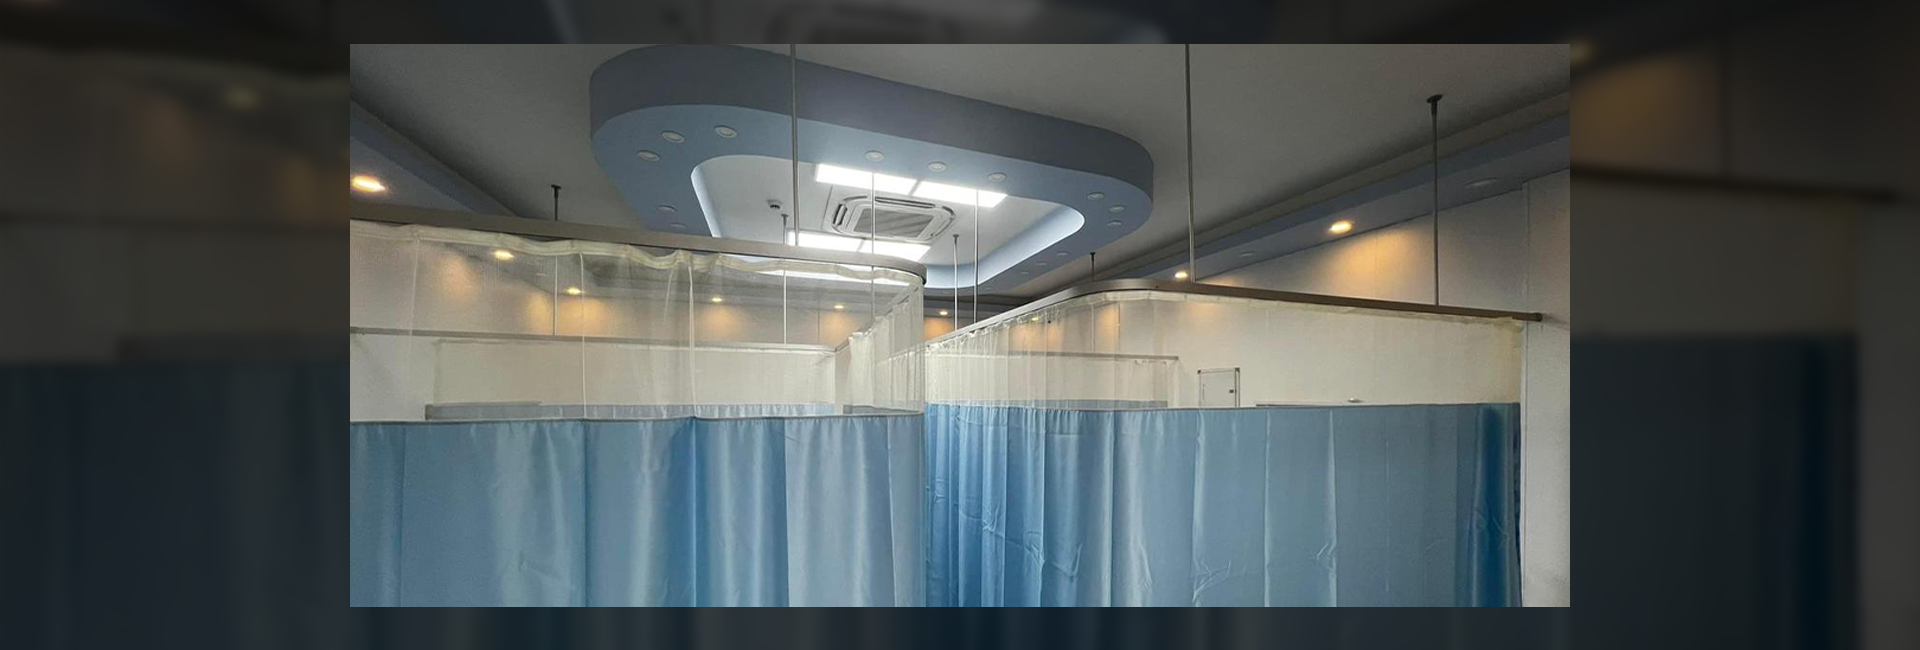 Hastane Perdesi ve Ray Sistemleri